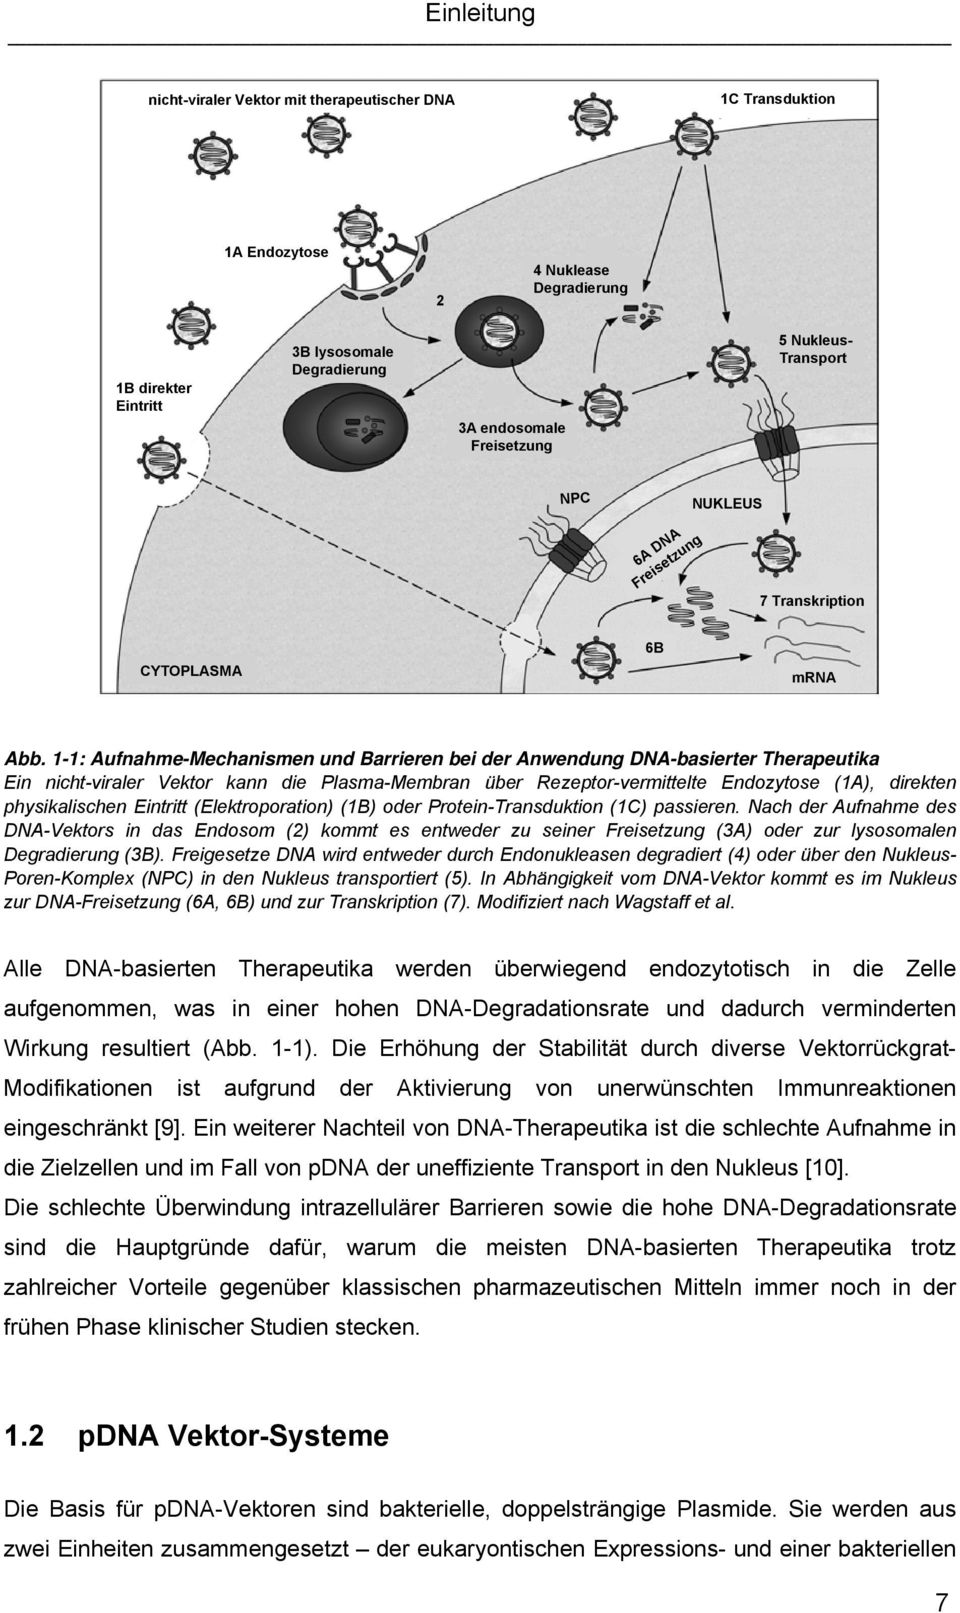 1-1: Aufnahme-Mechanismen und Barrieren bei der Anwendung DNA-basierter Therapeutika Ein nicht-viraler Vektor kann die Plasma-Membran über Rezeptor-vermittelte Endozytose (1A), direkten